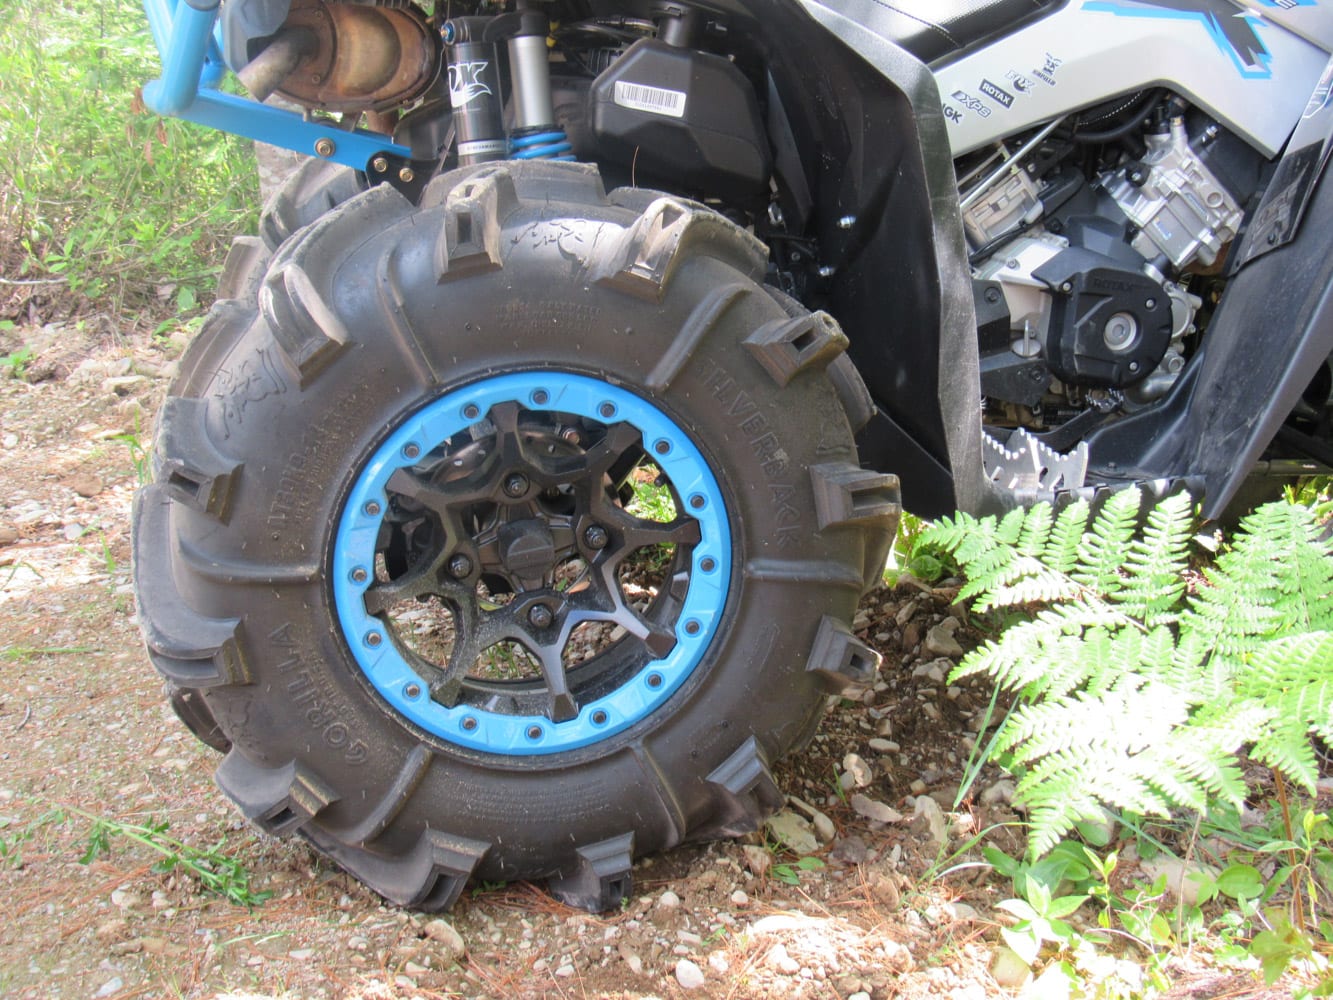 GUIDE : Bien choisir ses pneus de quad 